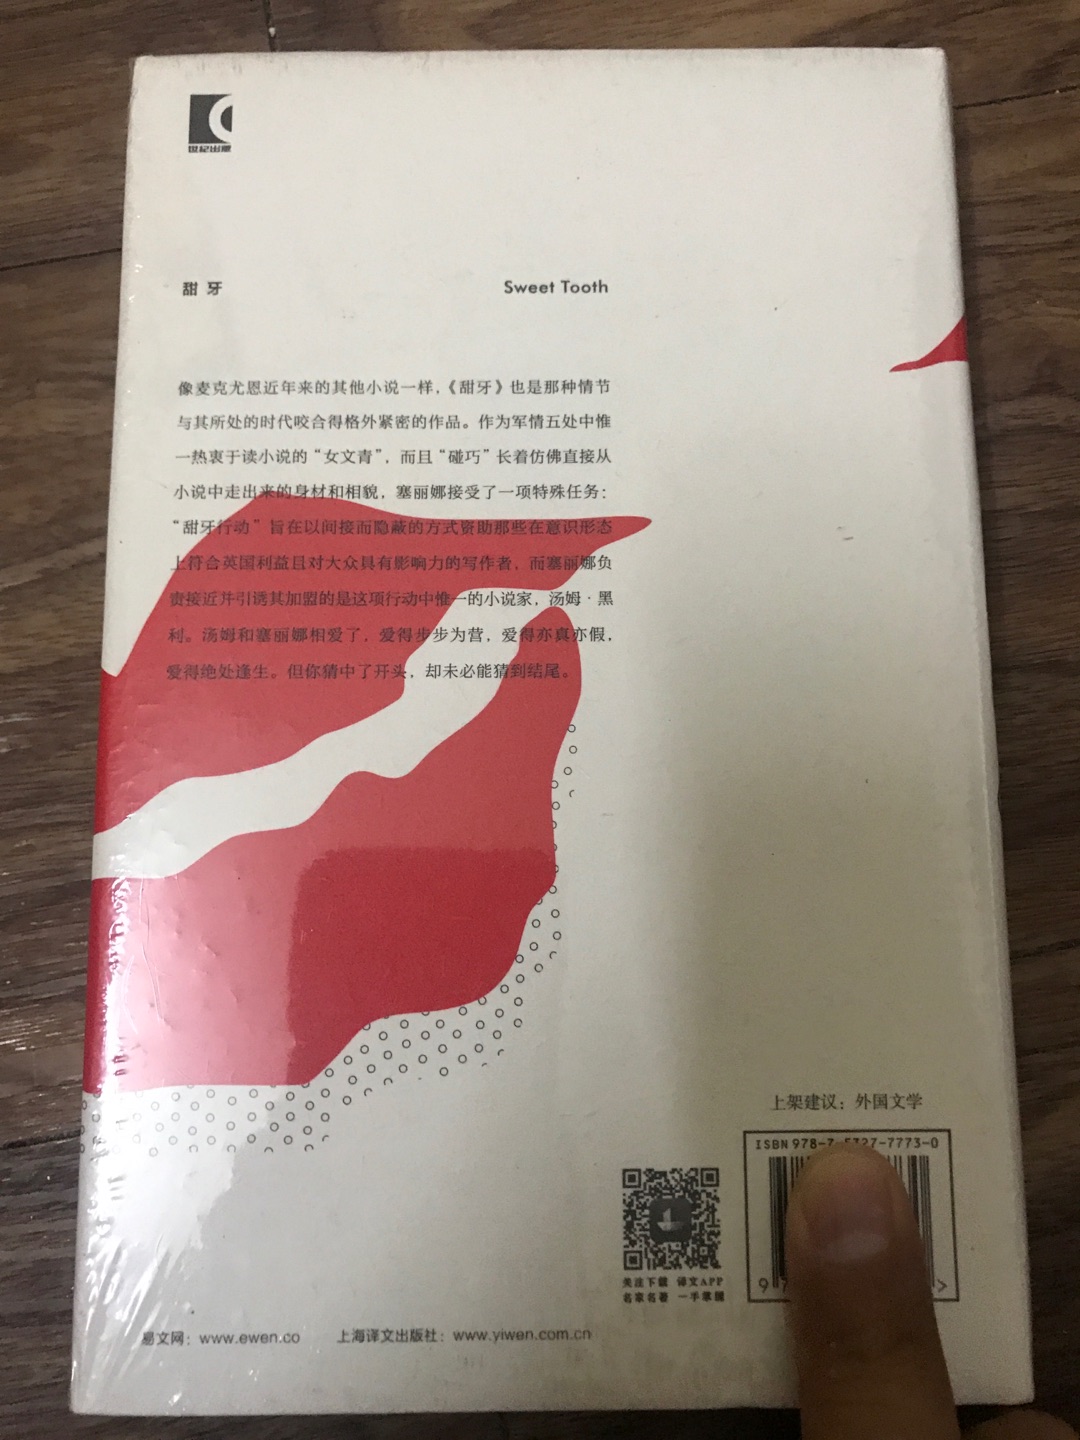 上海译文出版社出版的麦克尤恩作品集之《甜牙》，麦克尤恩在英国文坛堪称奇迹。这套书均是32开本的硬壳精装，方便携带阅读，印刷精美，字迹清楚，行间距便于阅读，值得推荐。